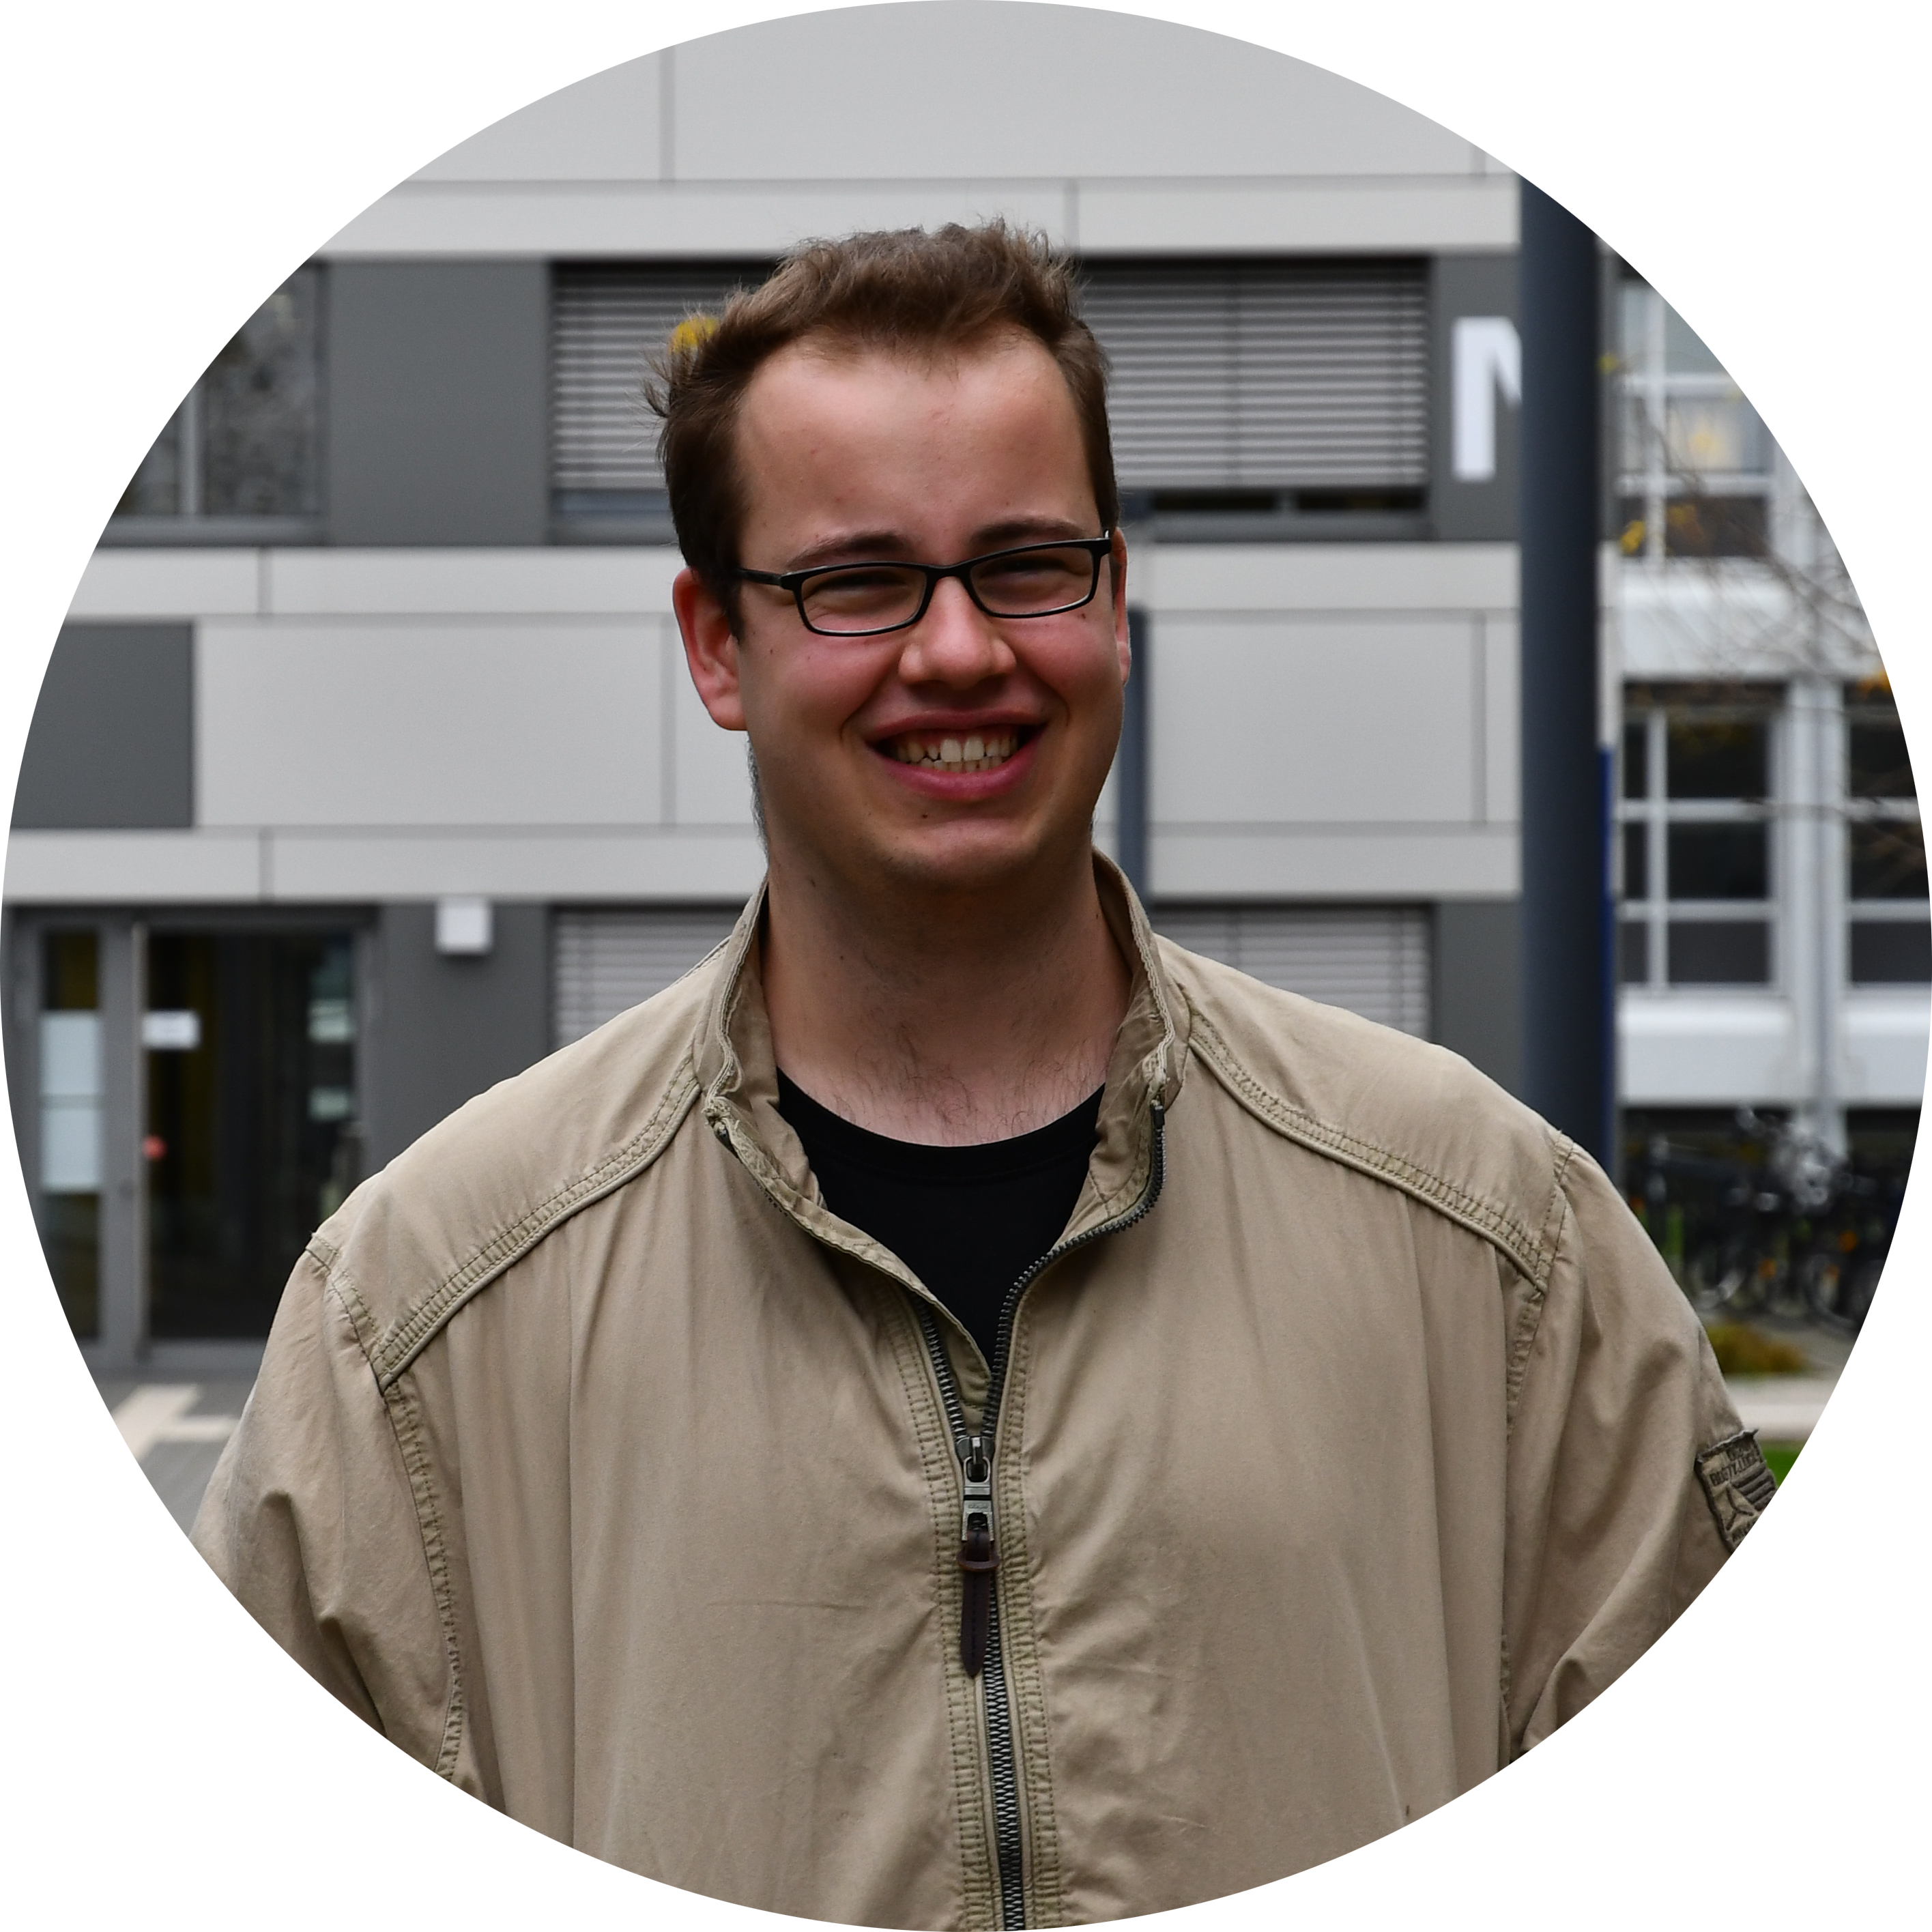 Justus Schnug, 23, studiert im 3tes Semester Chemieingenieurswesen an der FH Münster